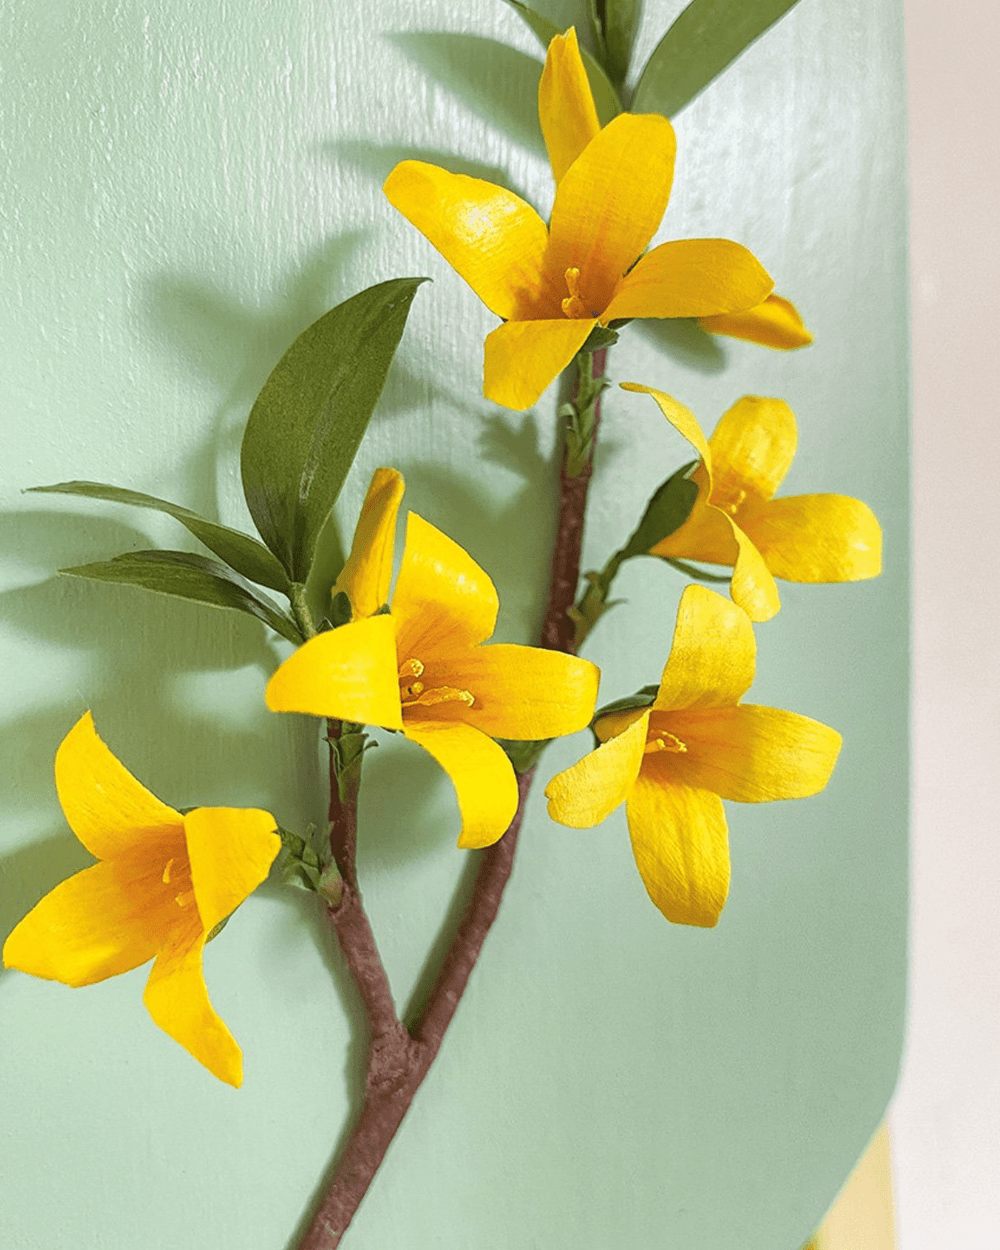 Twentyseven Toronto - Golden Age Botanicals Small Forsythia 5” wide x 7” tall